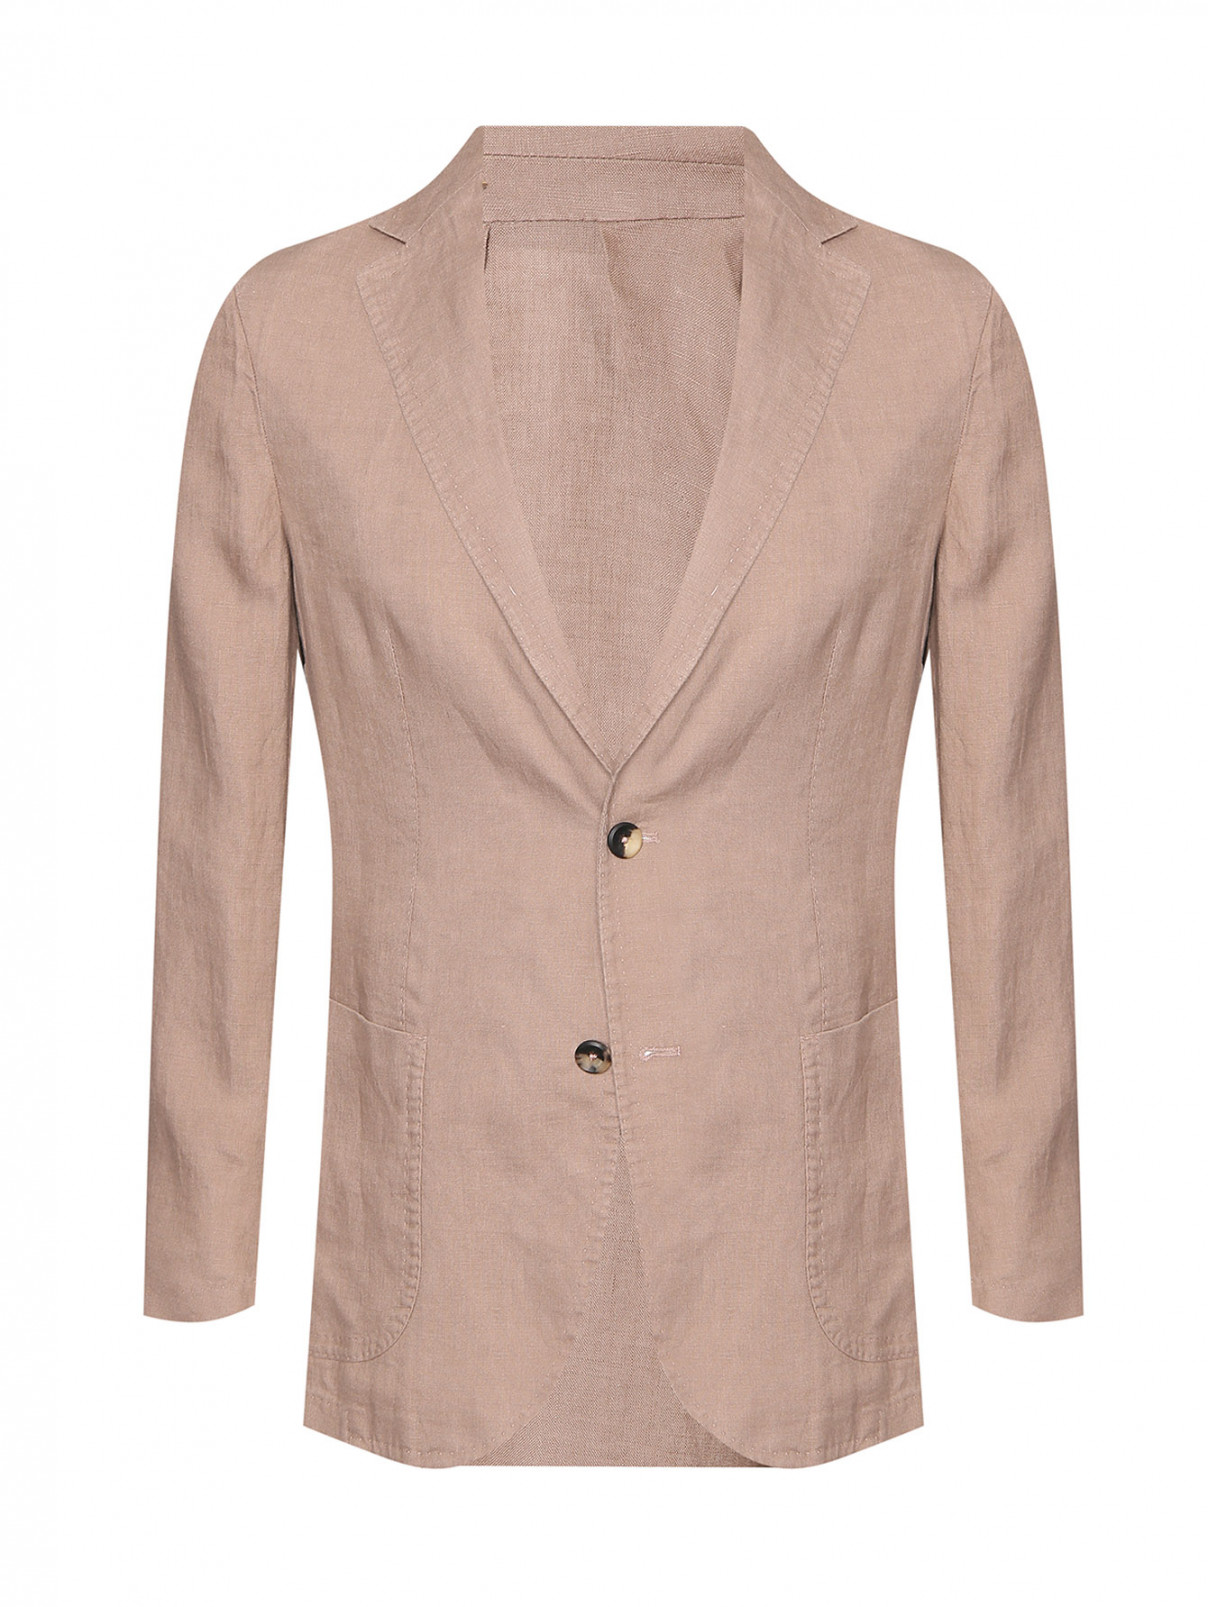 Пиджак однобортный из льна Giampaolo  –  Общий вид  – Цвет:  Коричневый